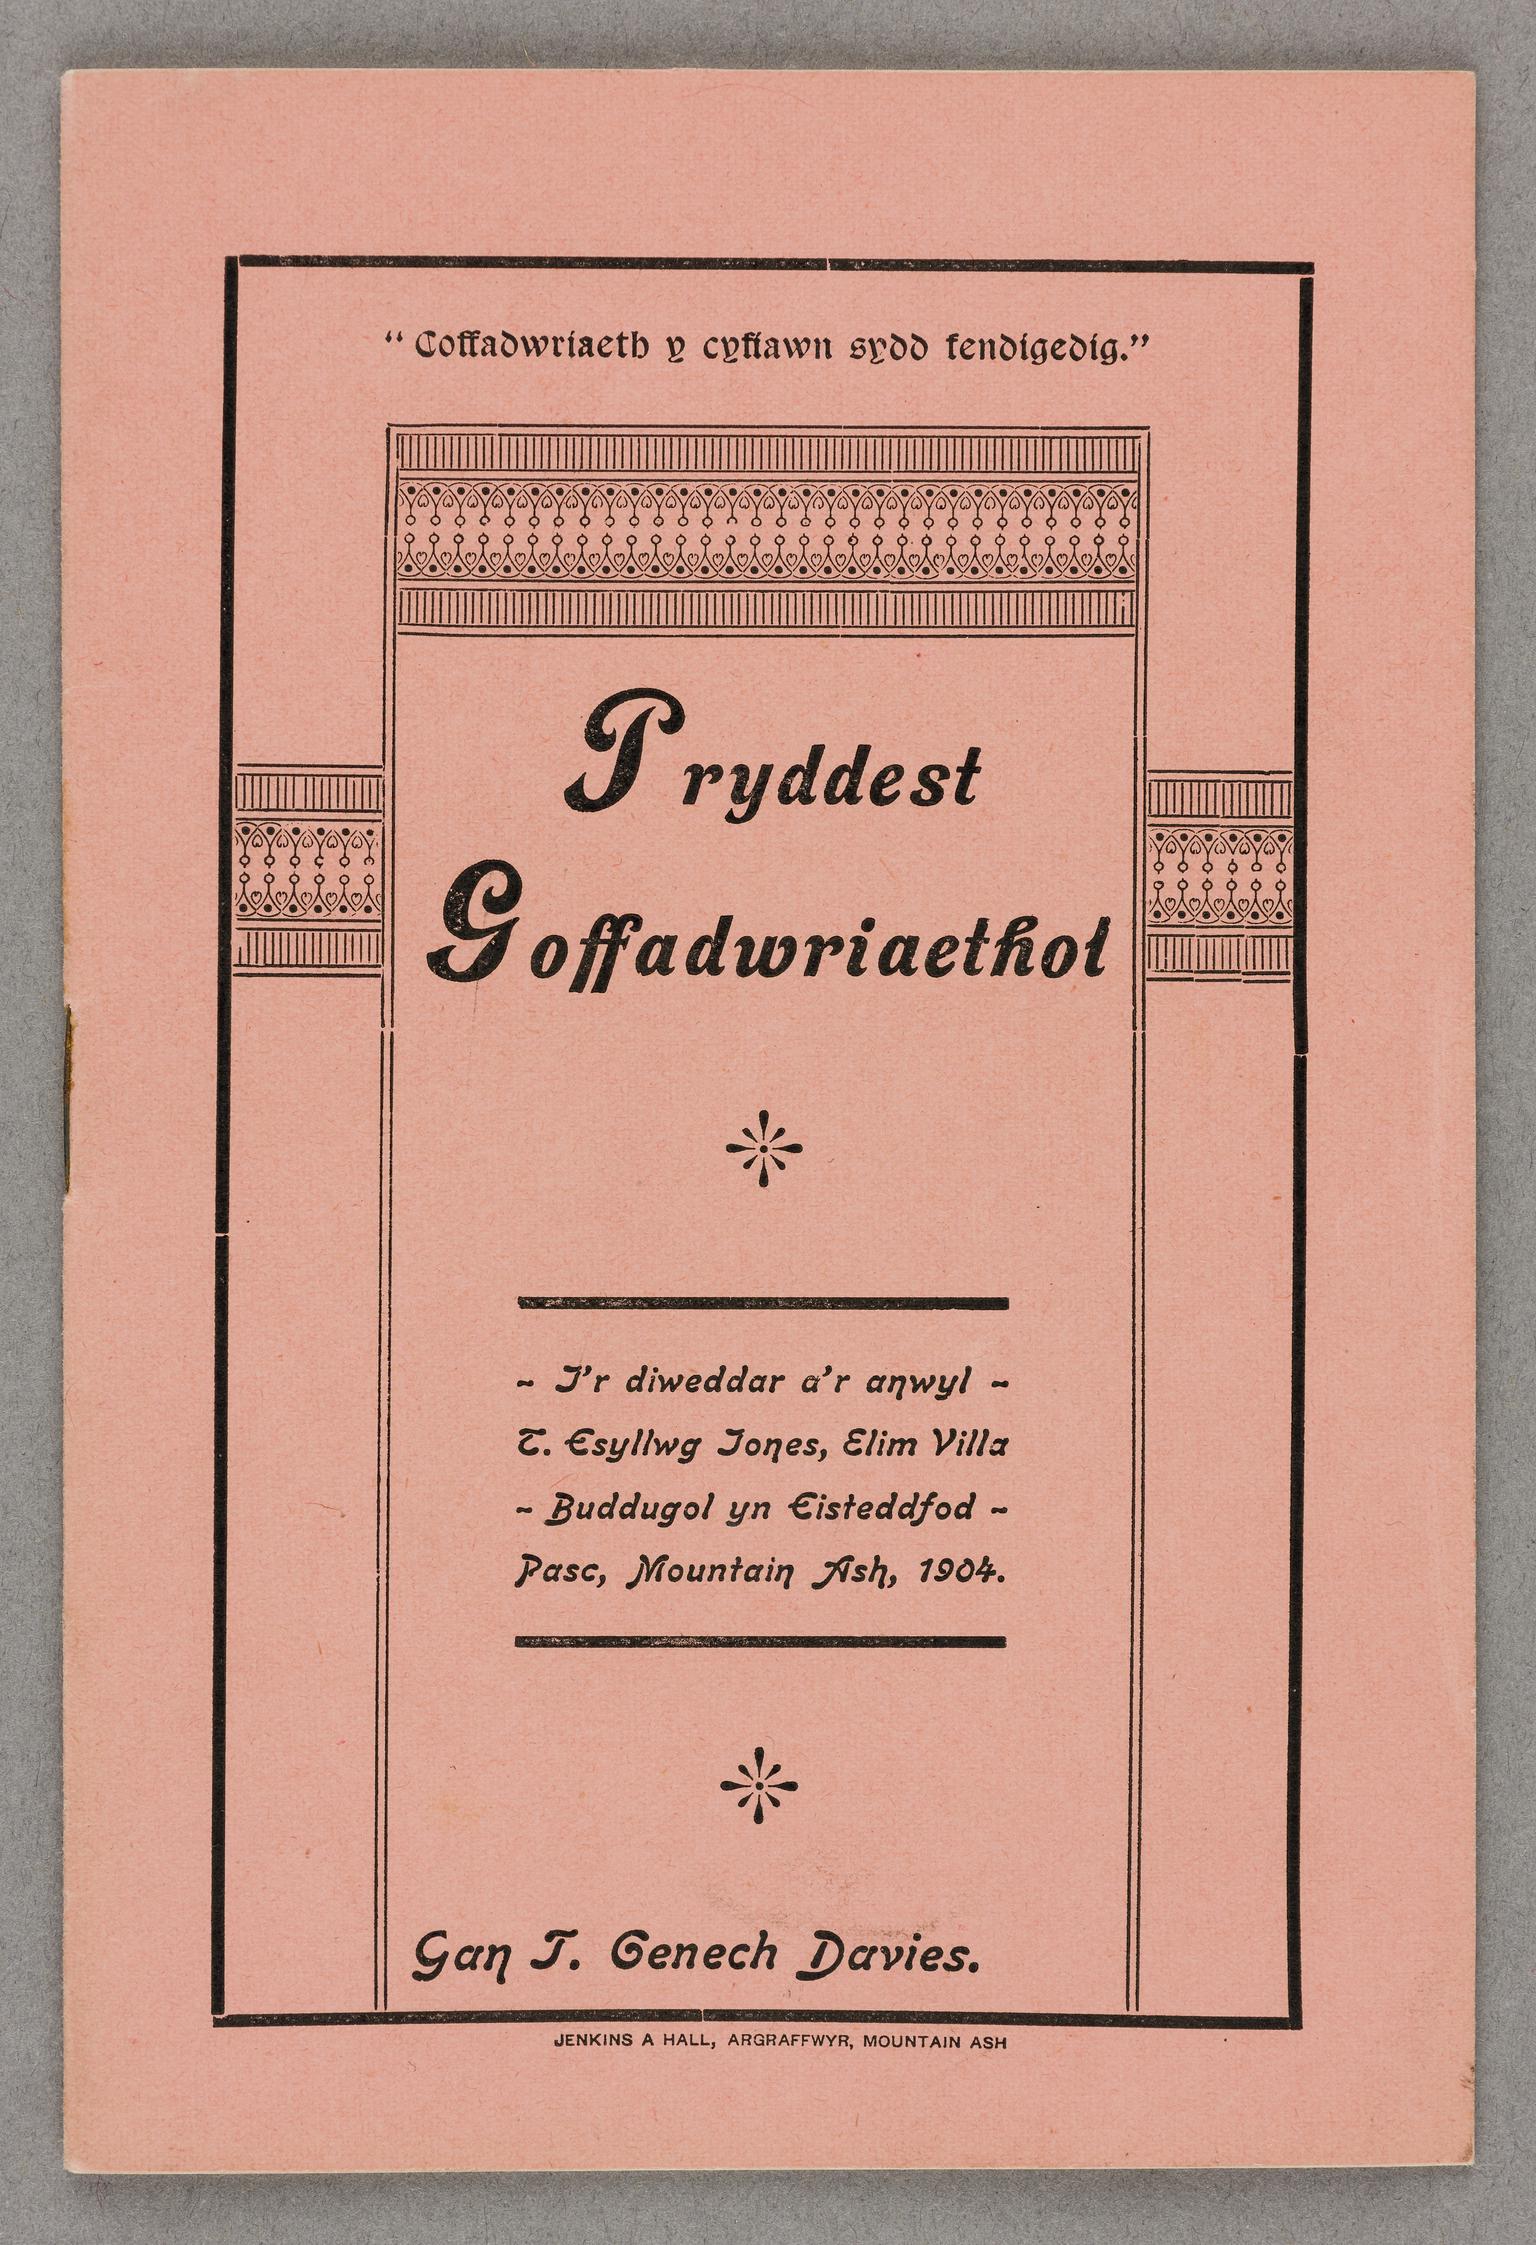 Pryddest Goffadwriaethol (pamphlet)